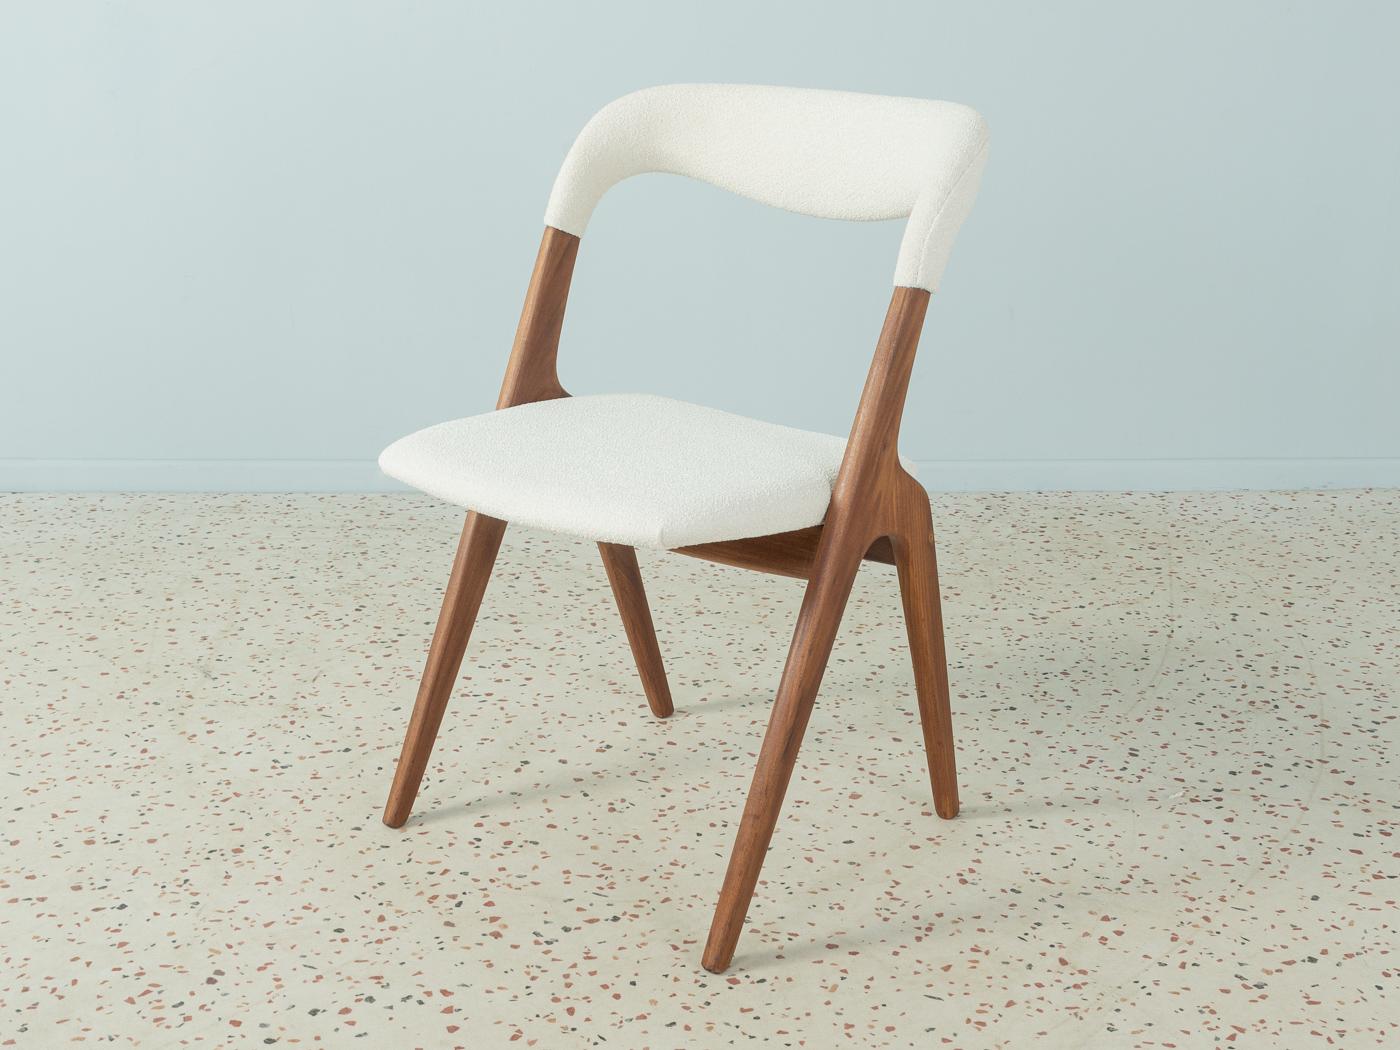 Élégante chaise conçue par Johannes Andersen pour Vamo Sønderborg dans les années 1960. Cadre en teck massif. La chaise a été retapissée et recouverte d'un tissu d'ameublement blanc crème de haute qualité.

Caractéristiques de qualité :
très bon